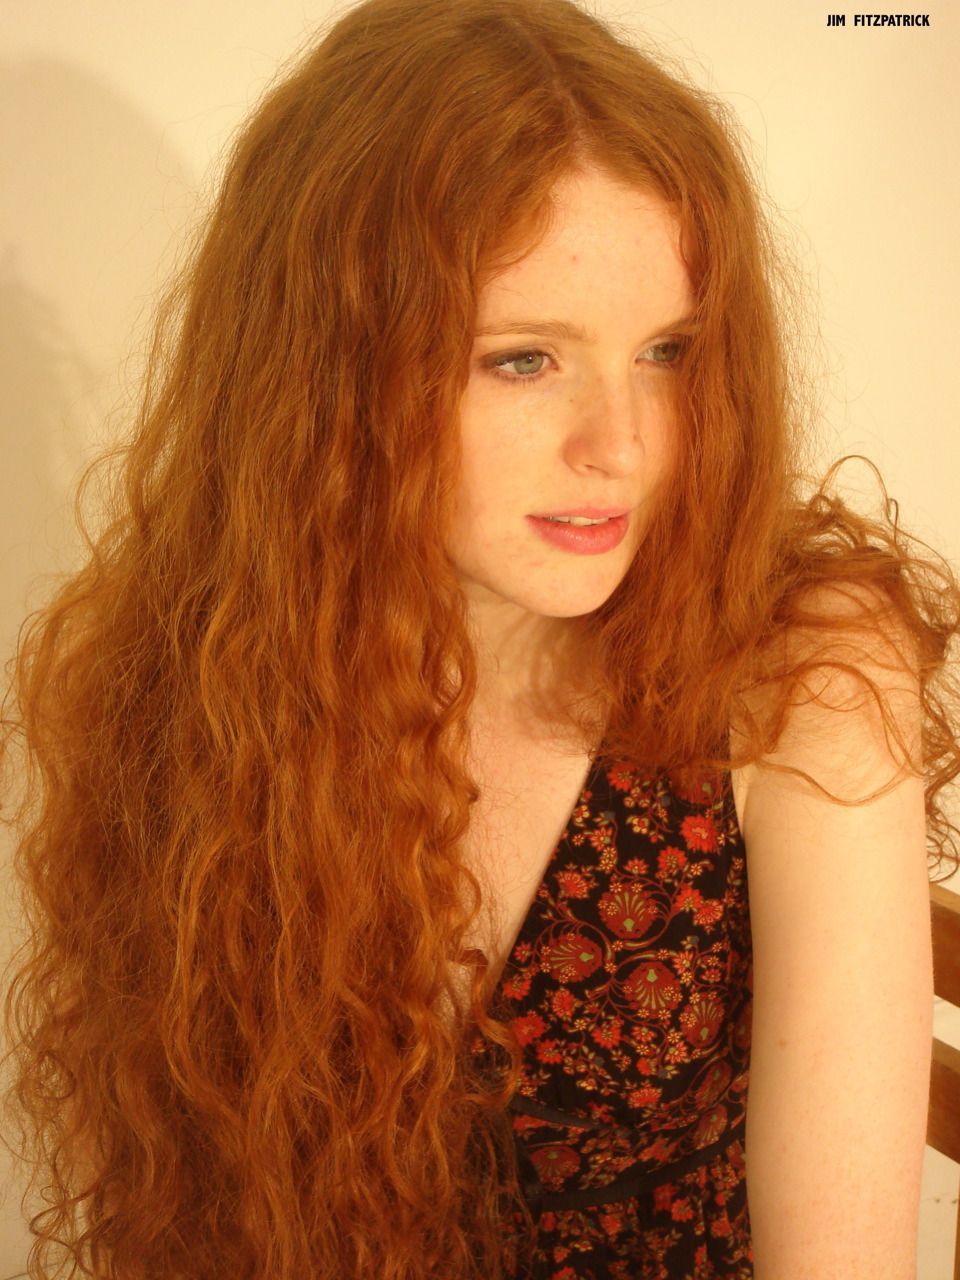 Irish redhead woman photos erotic